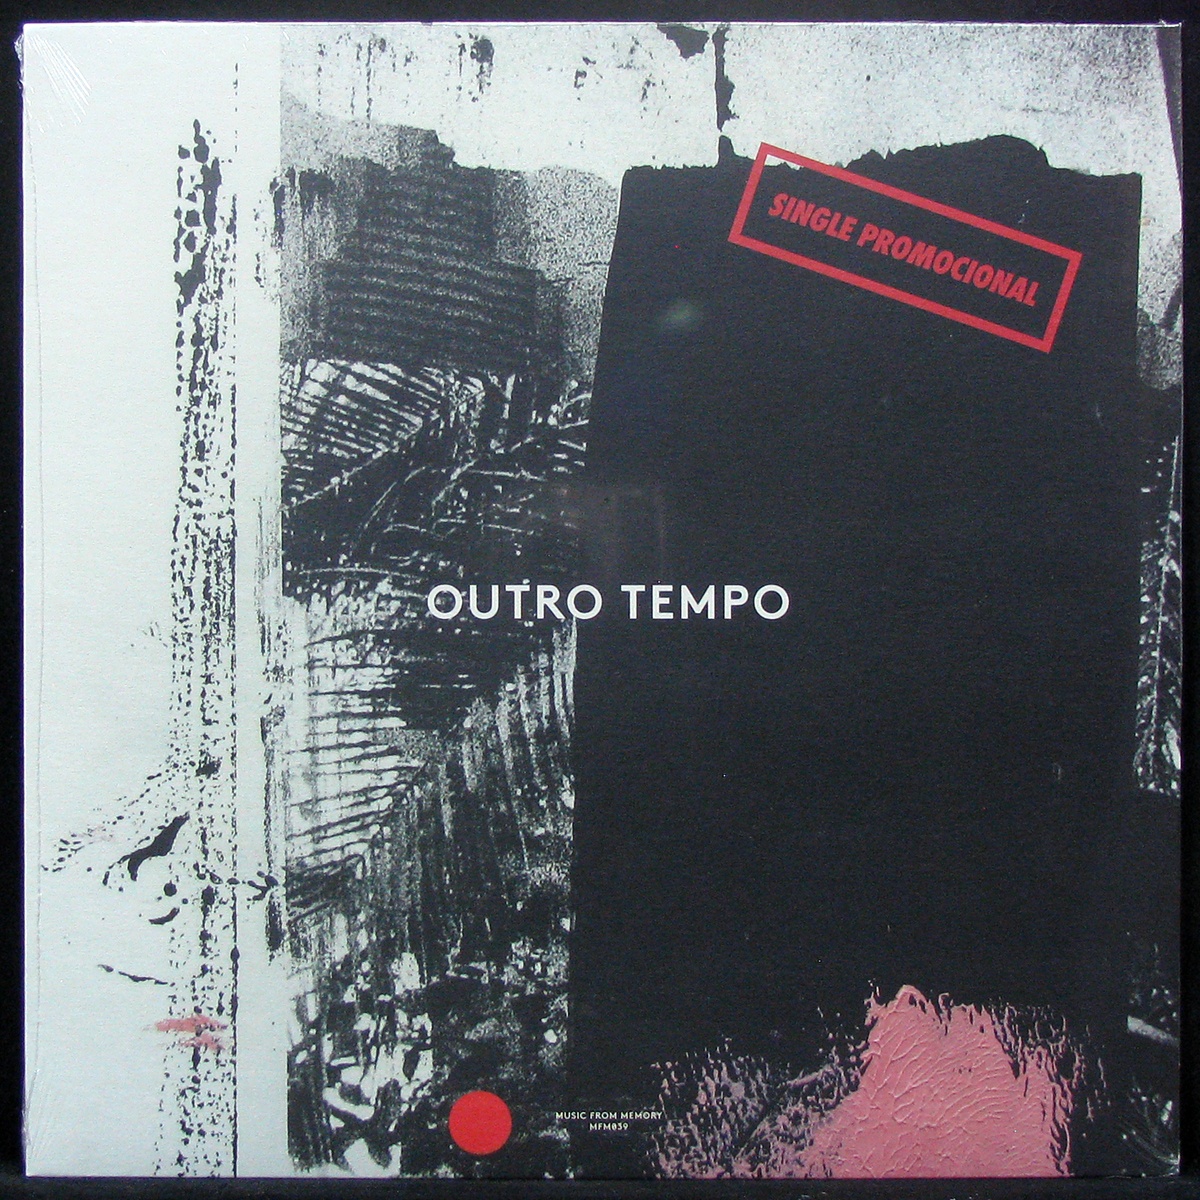 LP V/A — Outro Tempo (Single Promocional) (single) фото